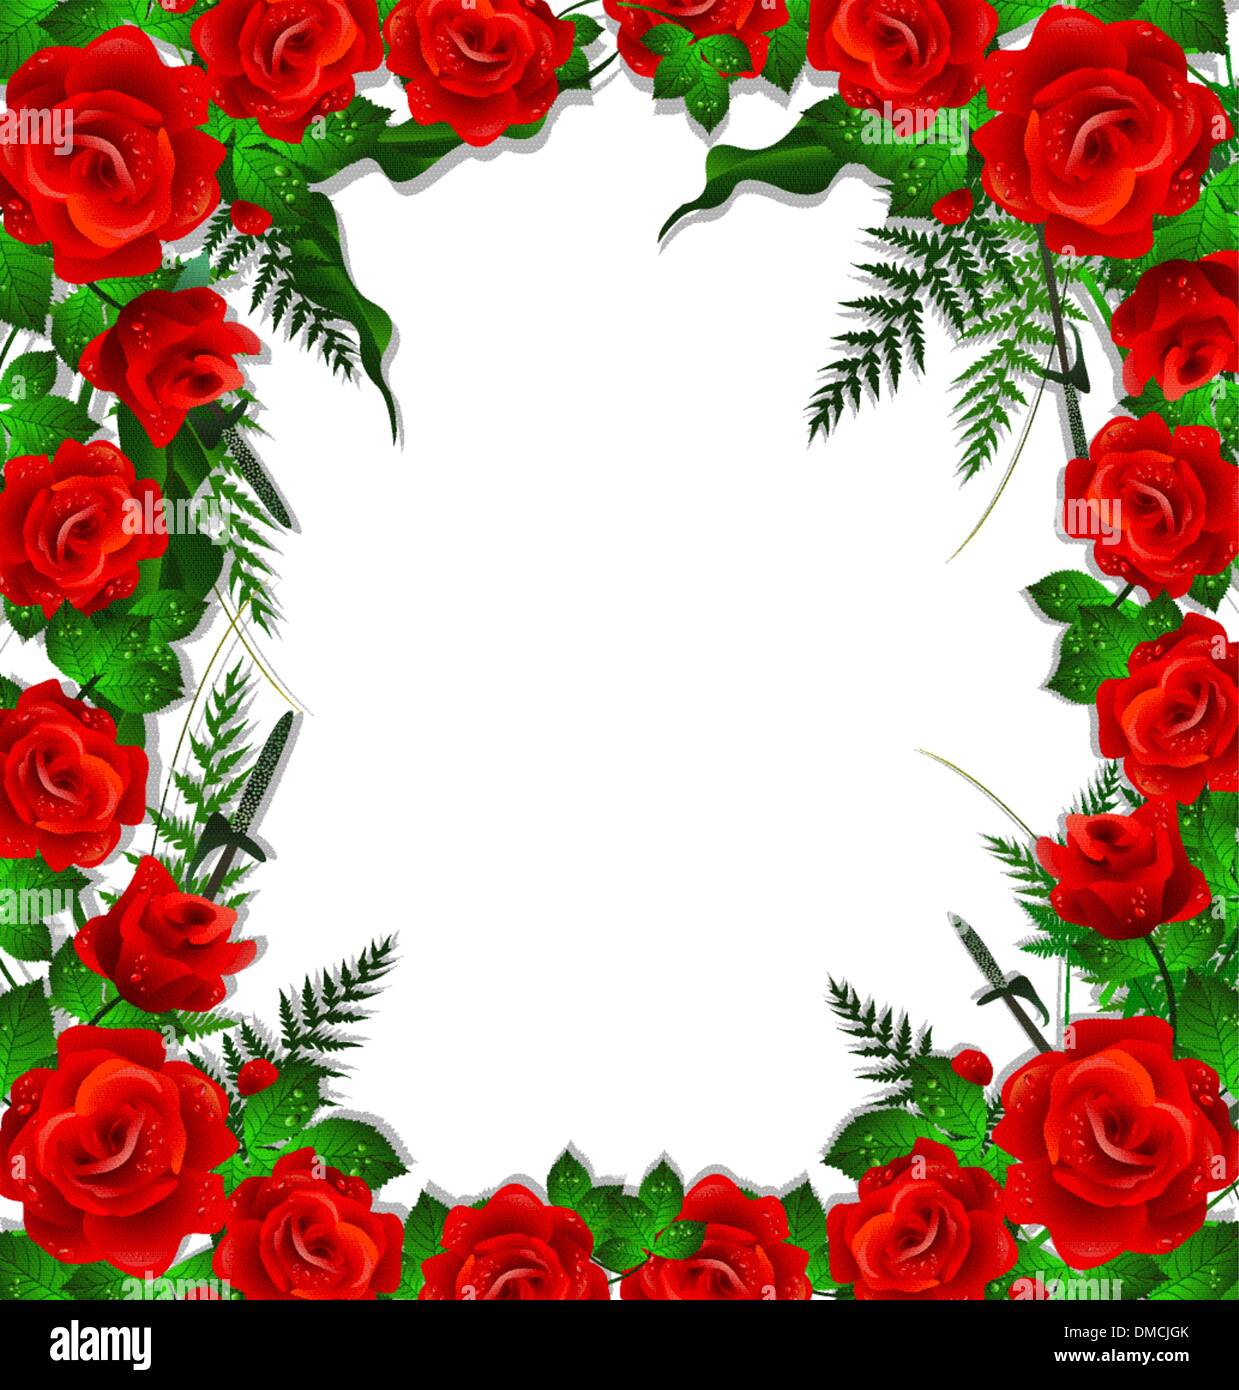 rote Rosen mit Blätter-Hintergrund Stock Vektor